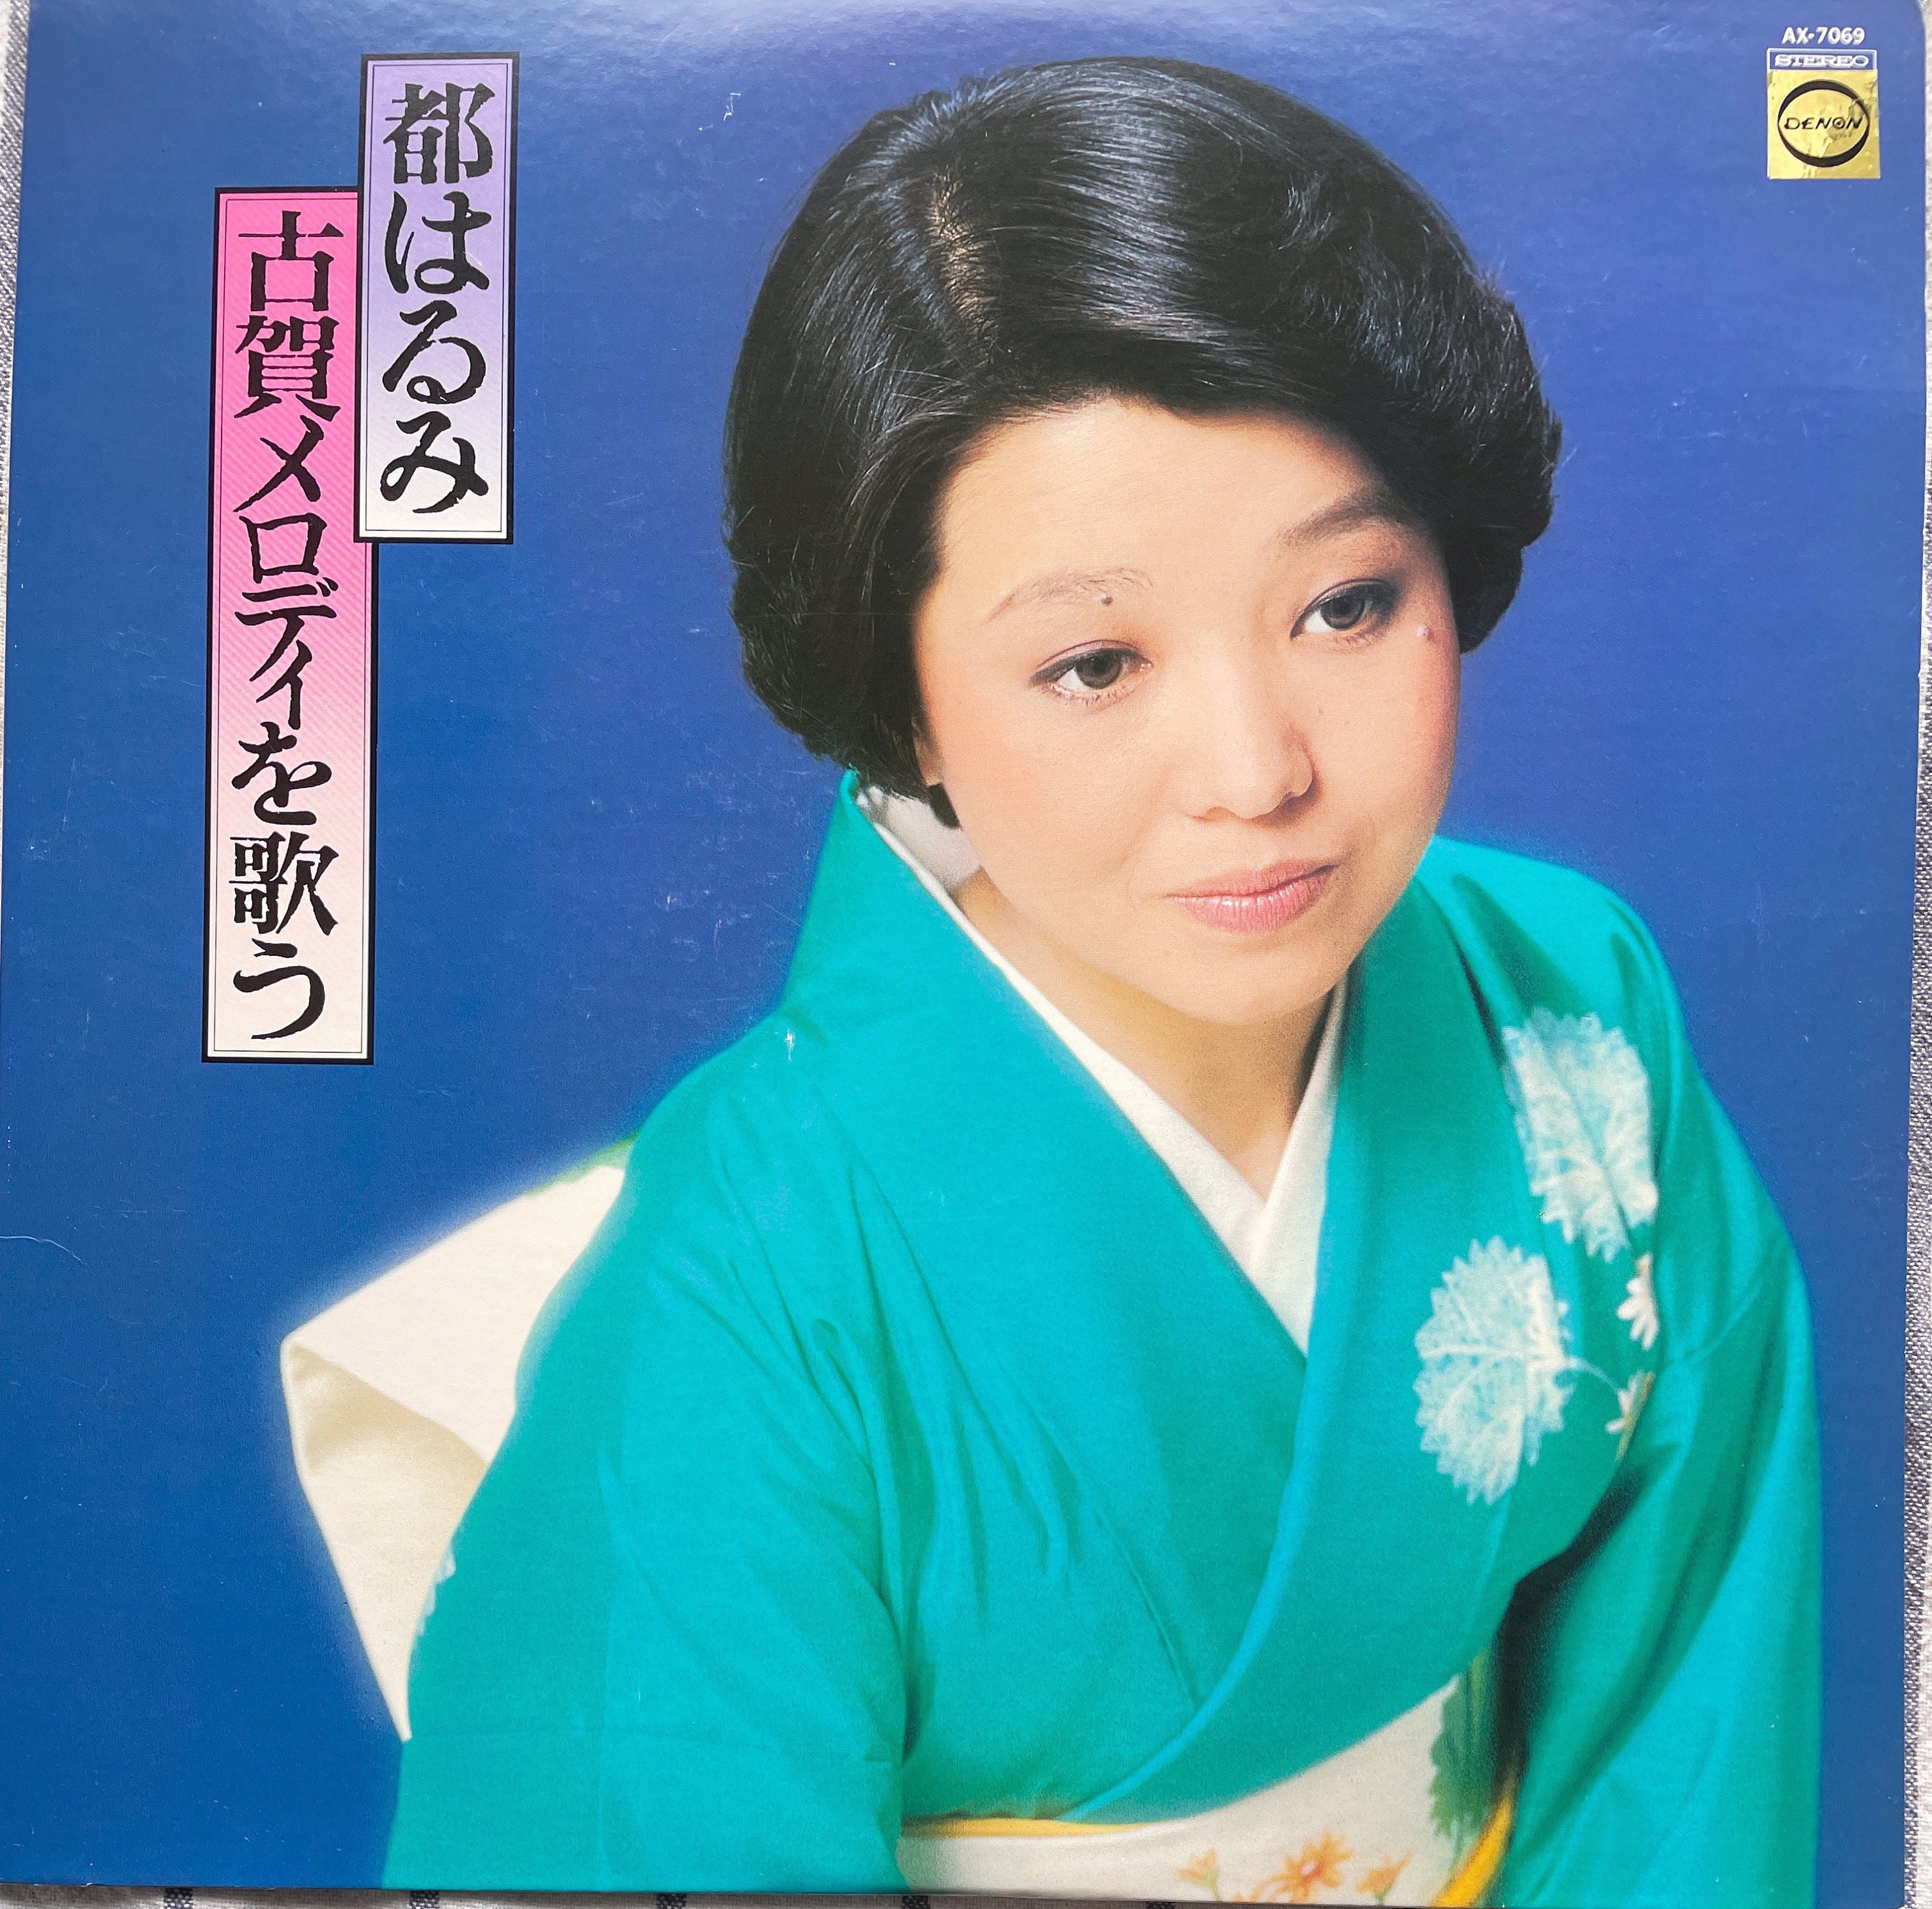 Vintage Japanese Vocals LP: Harumi Miyako 都はるみ, Import, Denon